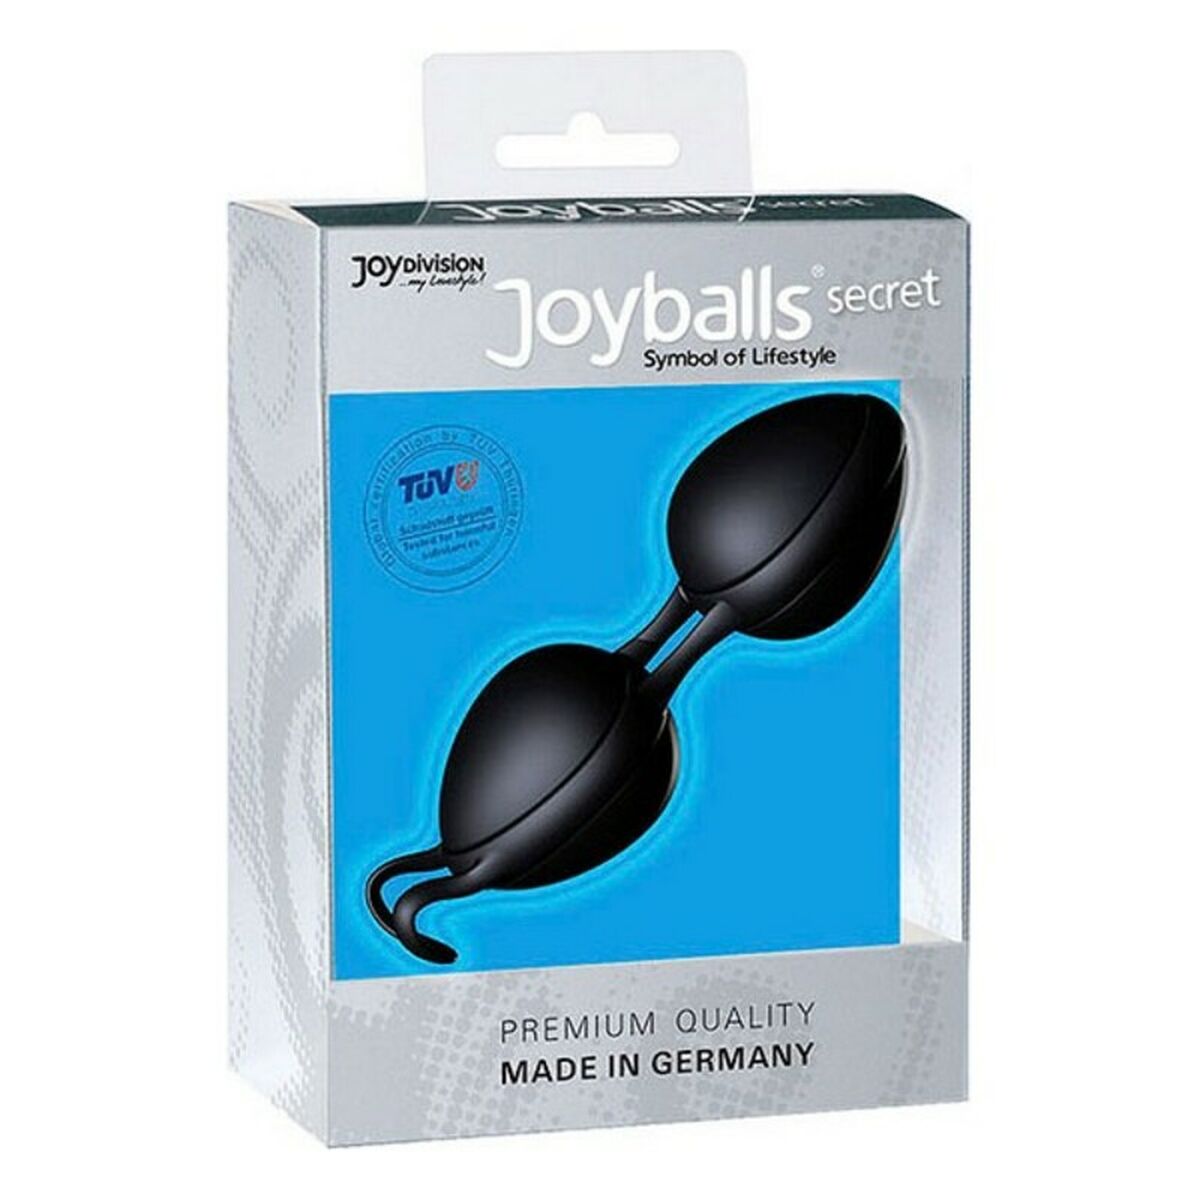 Joyballs Secret Duo Black Chinese Balls Joydivision 500500160 Black